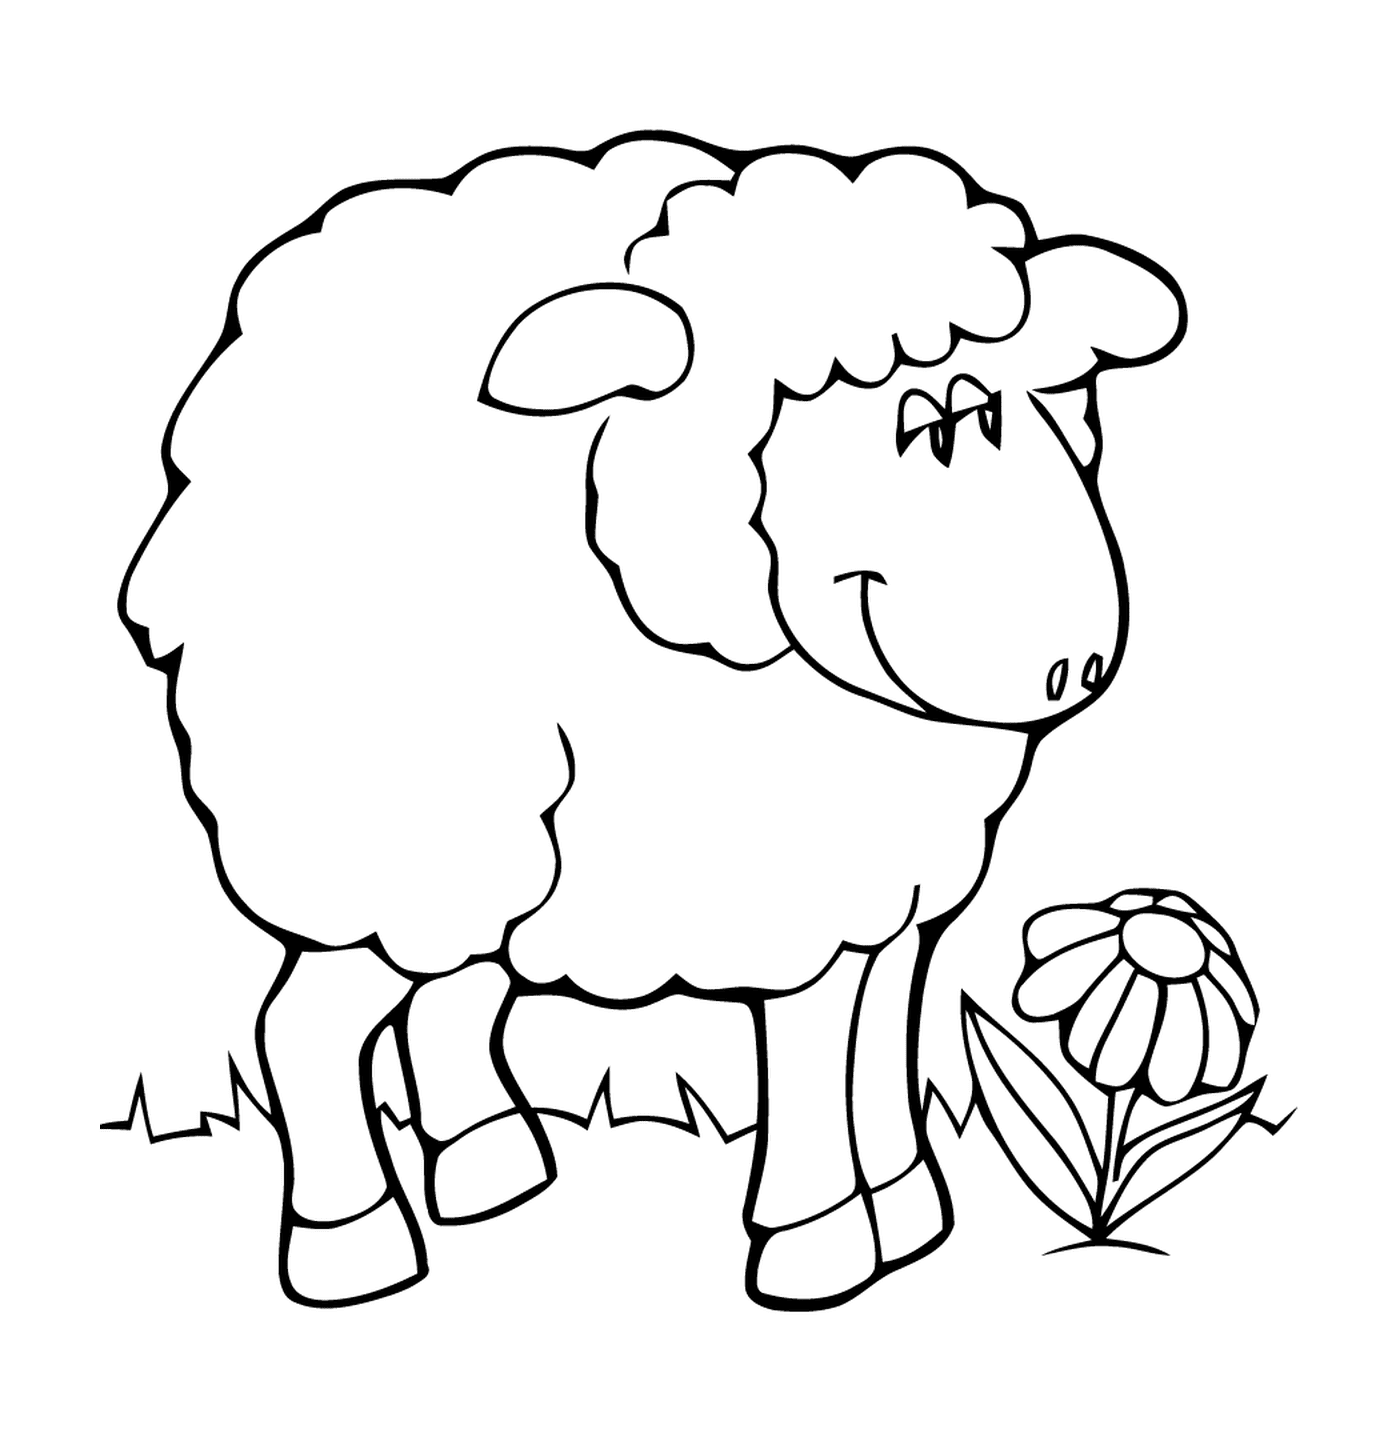  Mutters Schafe ruht sich leicht aus 